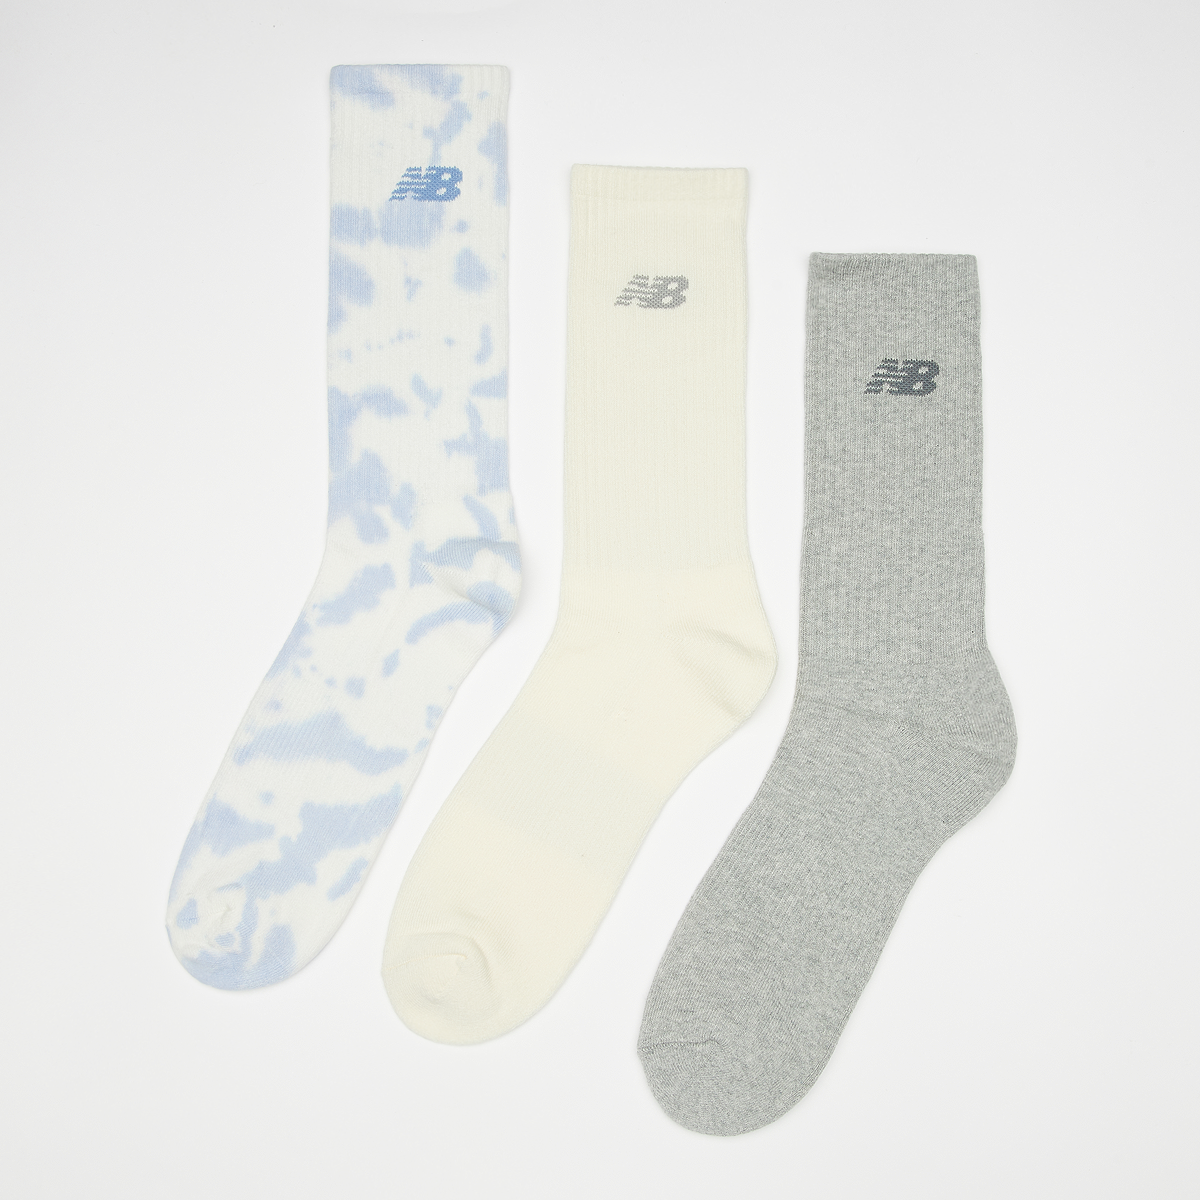 New Balance Fashion Cushioned Crew Socks Tie-dye (3 Pack) Lang Heren white maat: 39-42 beschikbare maaten:35-38 39-42 43-46